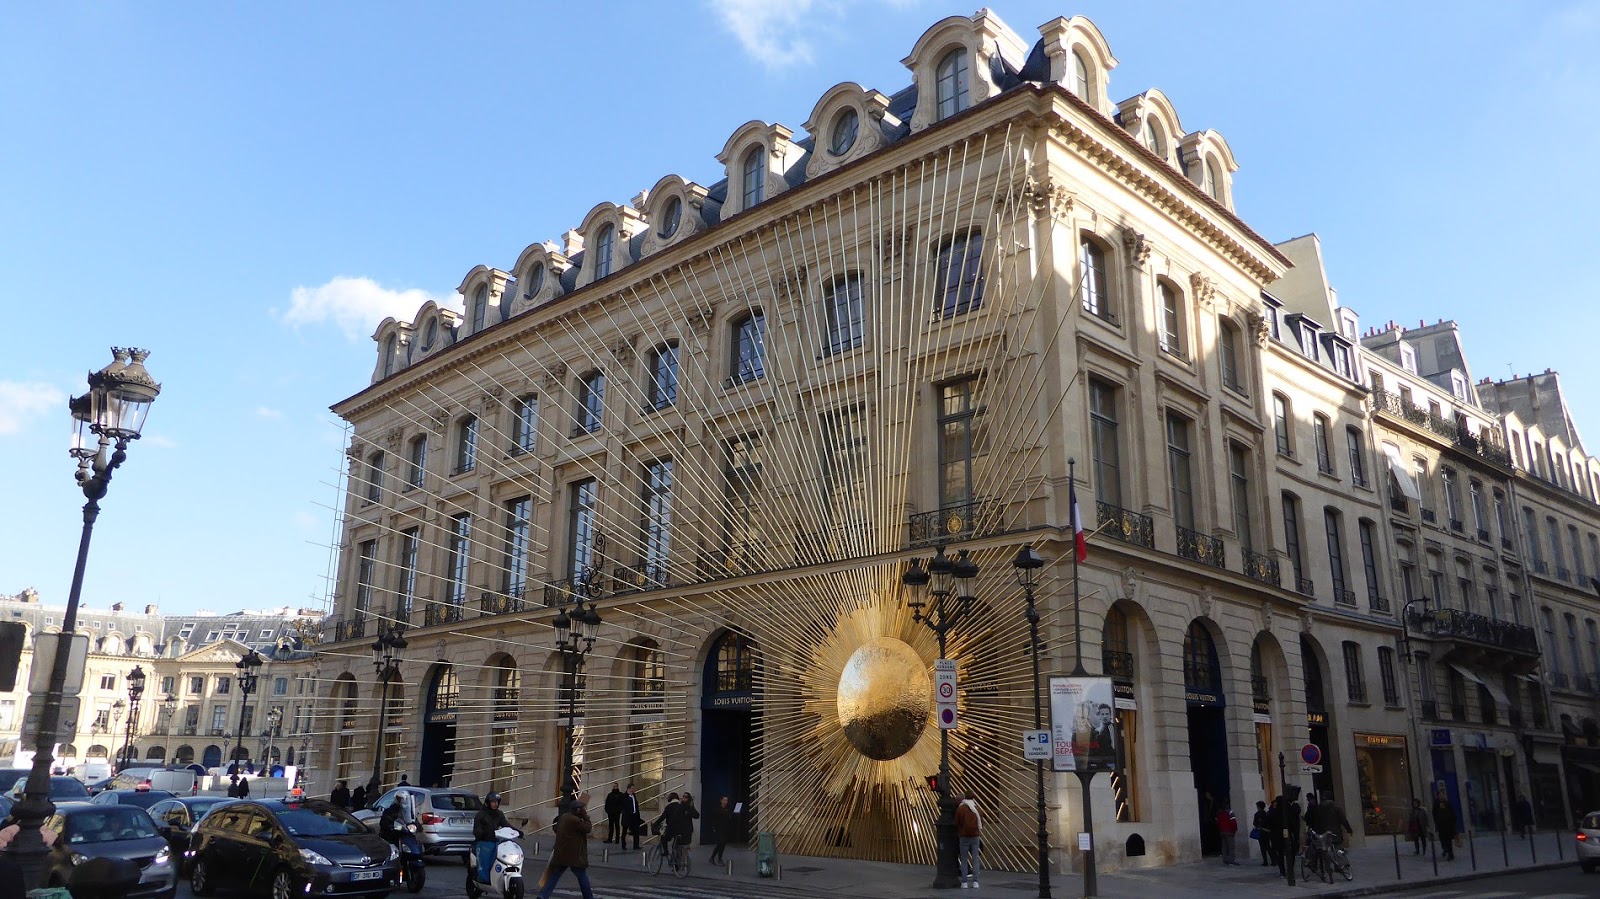 Paris-bise-art : Louis Vuitton place Vendôme